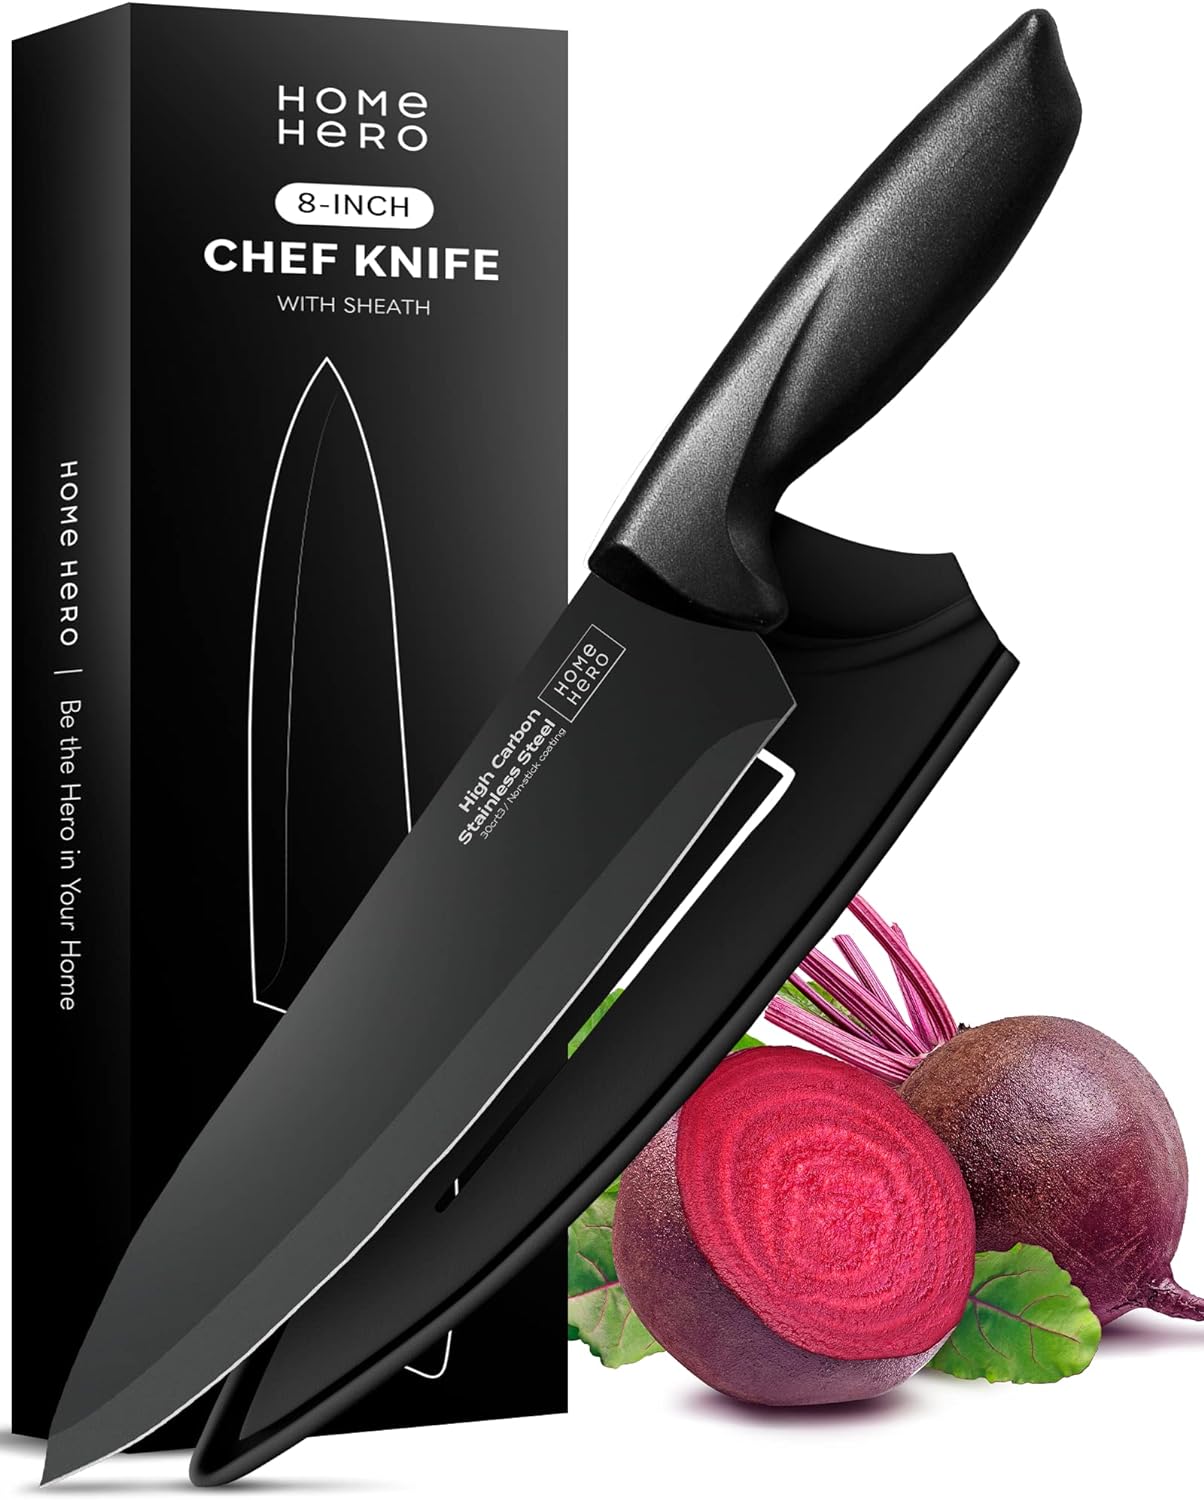 Home Hero - Kitchen Knives - Knife Set for Kitchen w/ Sheath